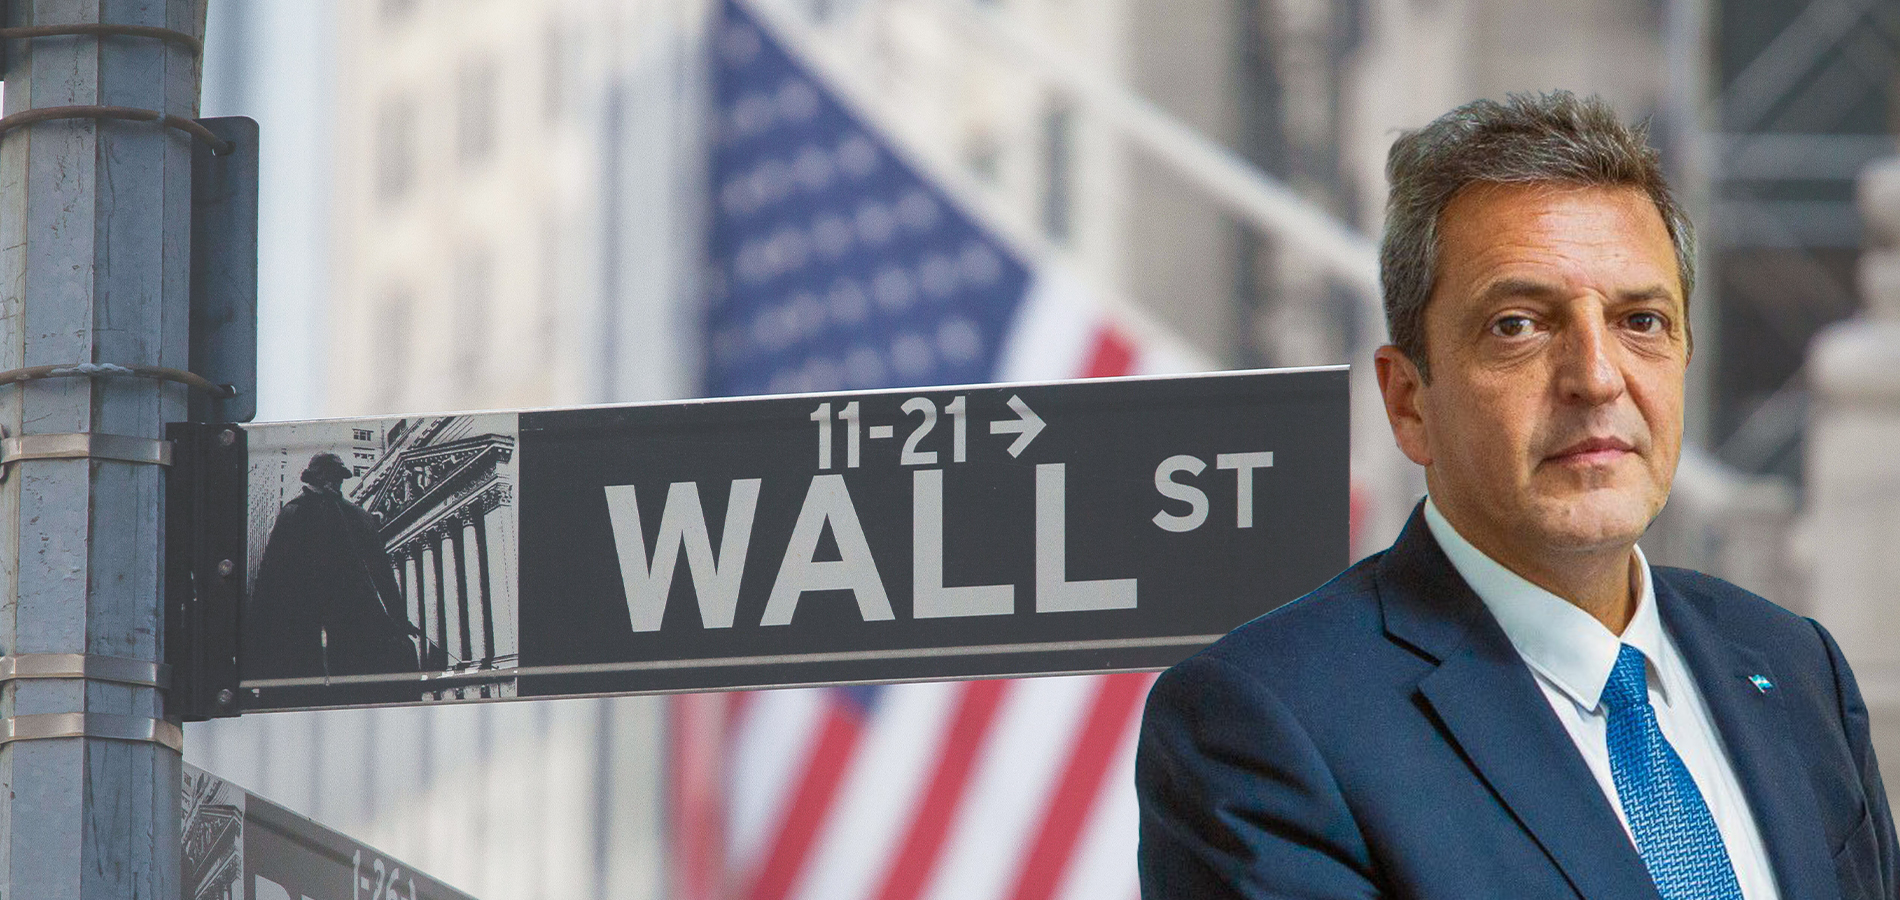 Massa: el candidato del establishment que no convence a Wall Street, desafía la matemática de su propia gestión